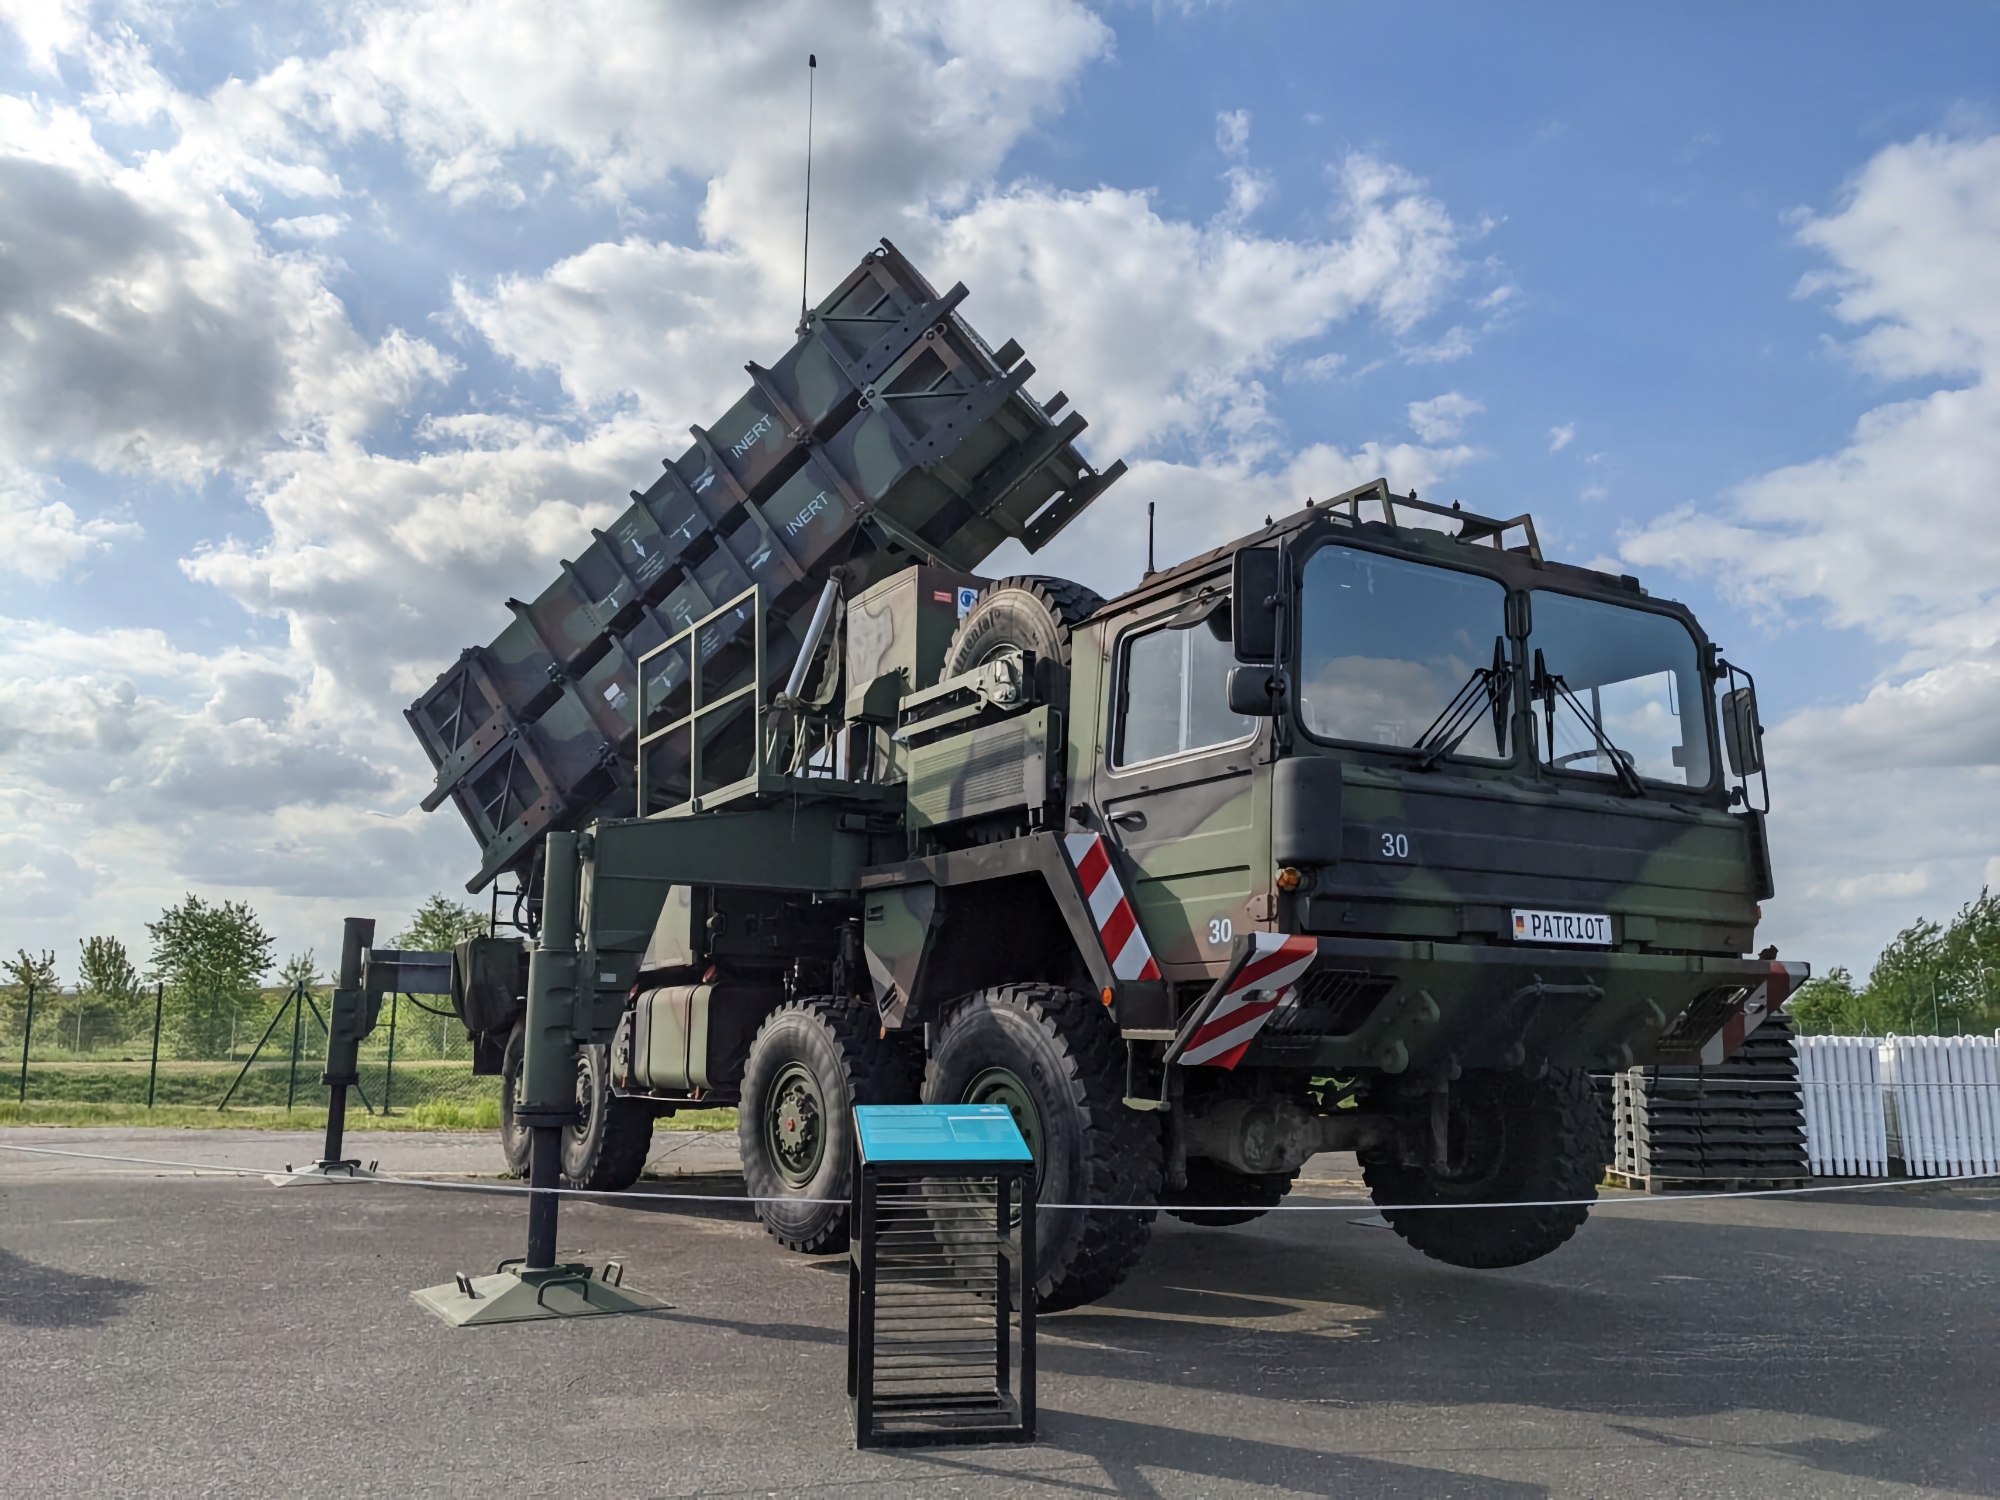 Tyskland overfører yderligere MIM-104 Patriot jord-til-luft-missilsystem til Ukraine